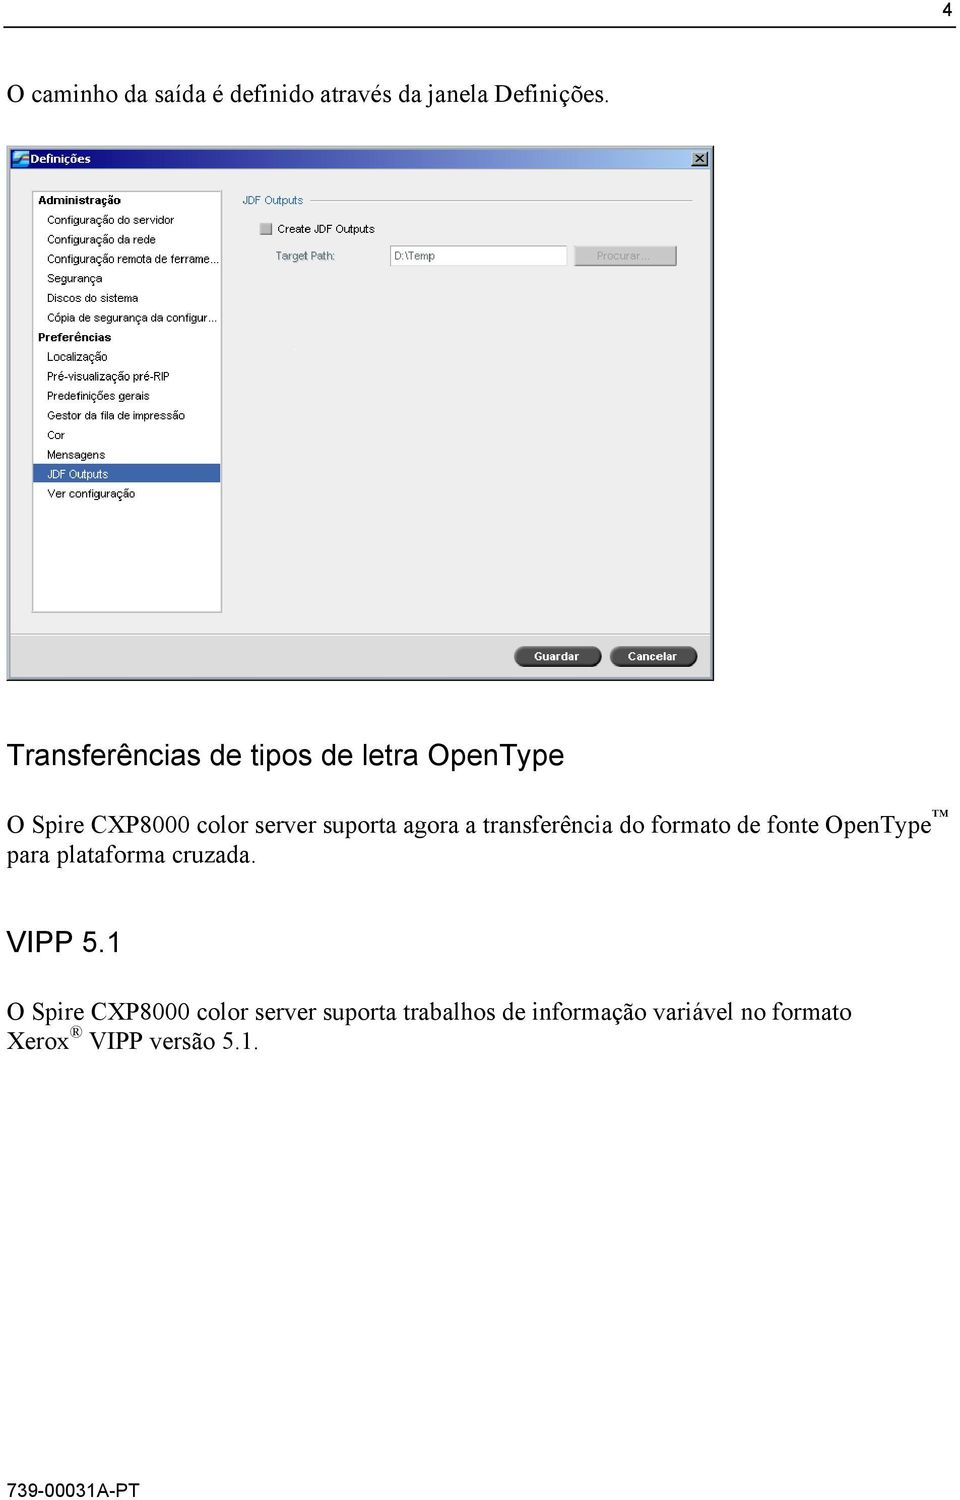 agora a transferência do formato de fonte OpenType para plataforma cruzada. VIPP 5.